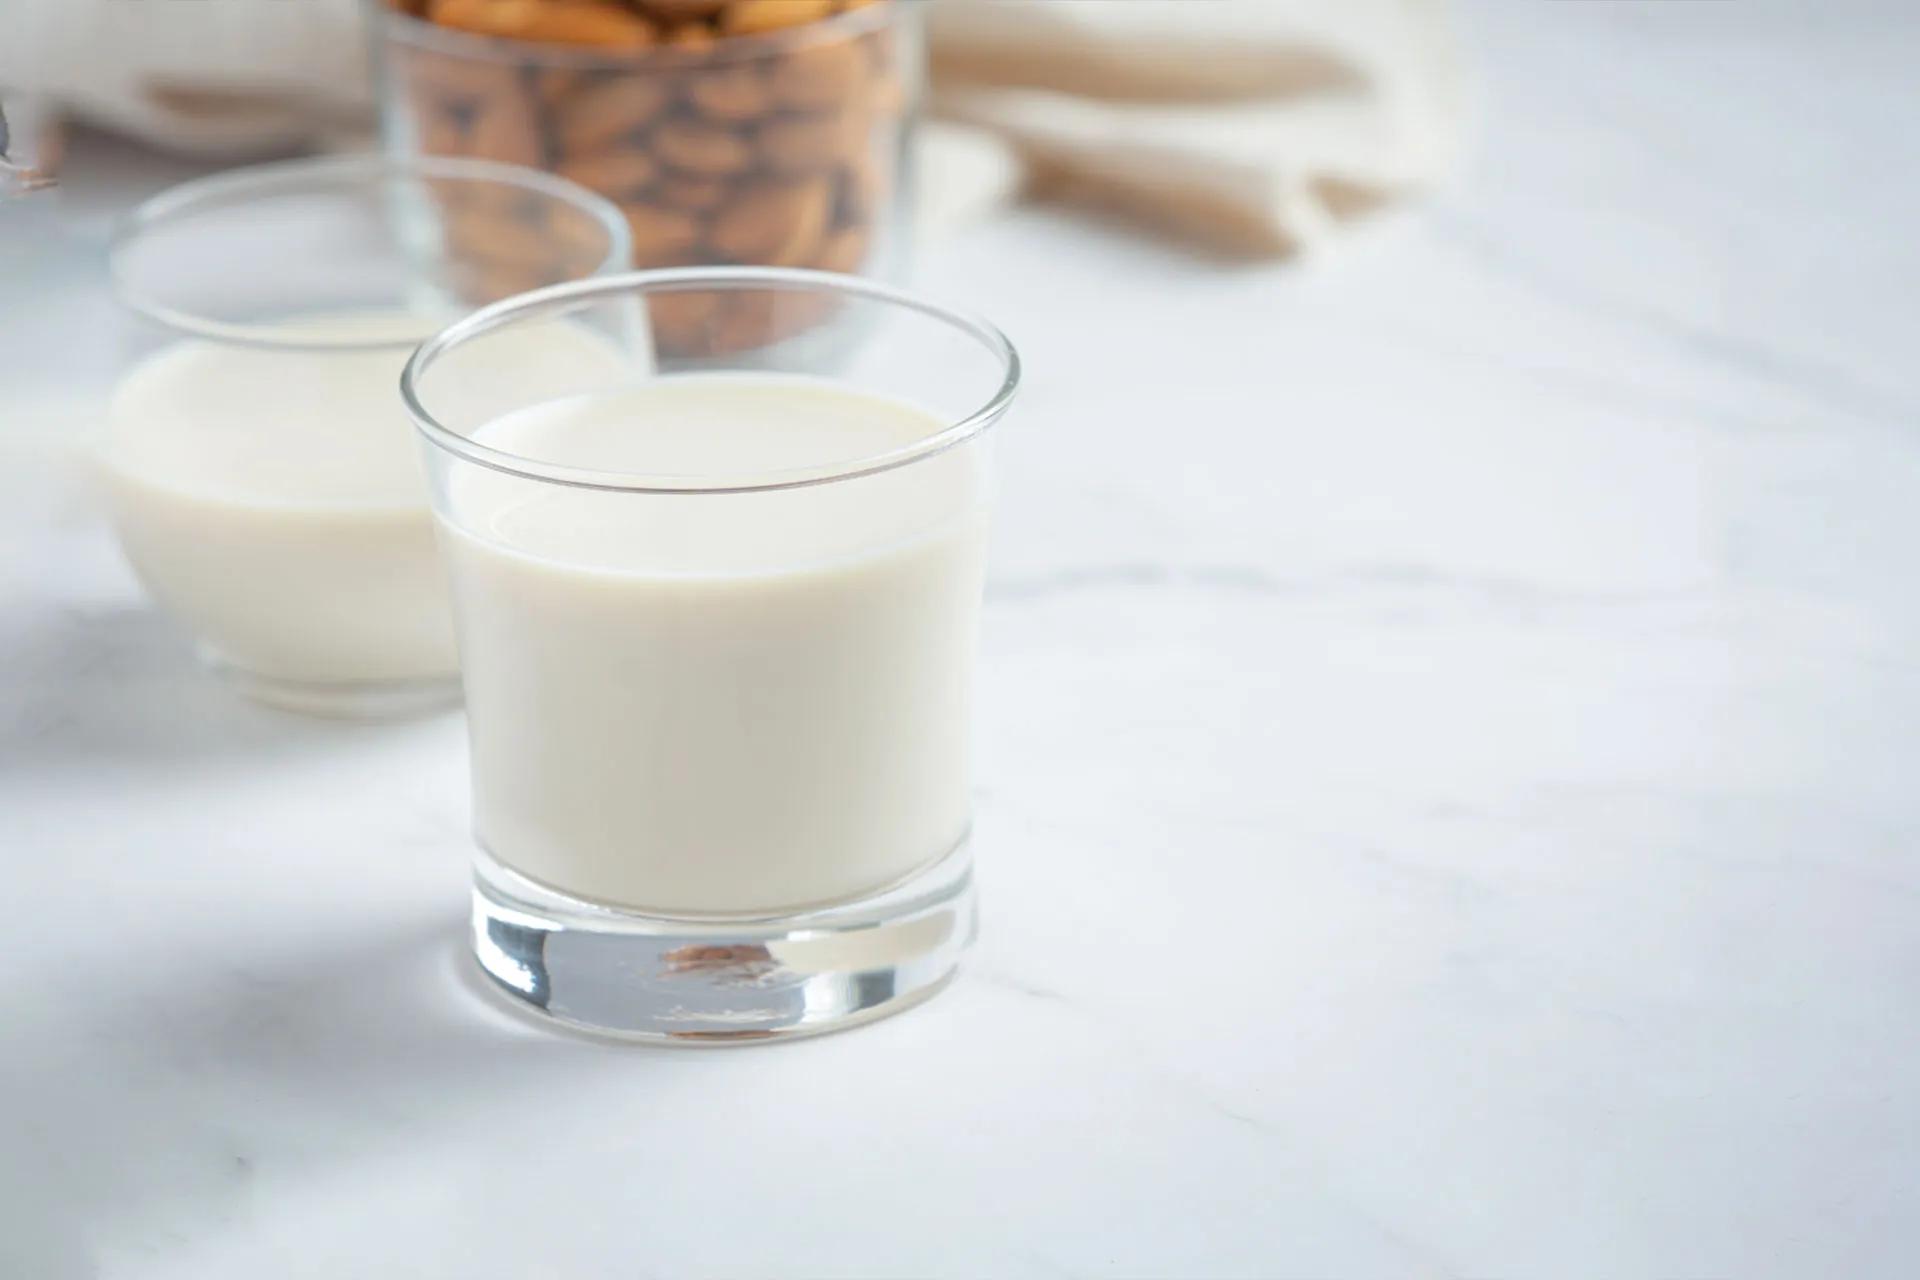 दूध प्रथिने अलग करा: काय आहे, फायदे आणि शिफारसी